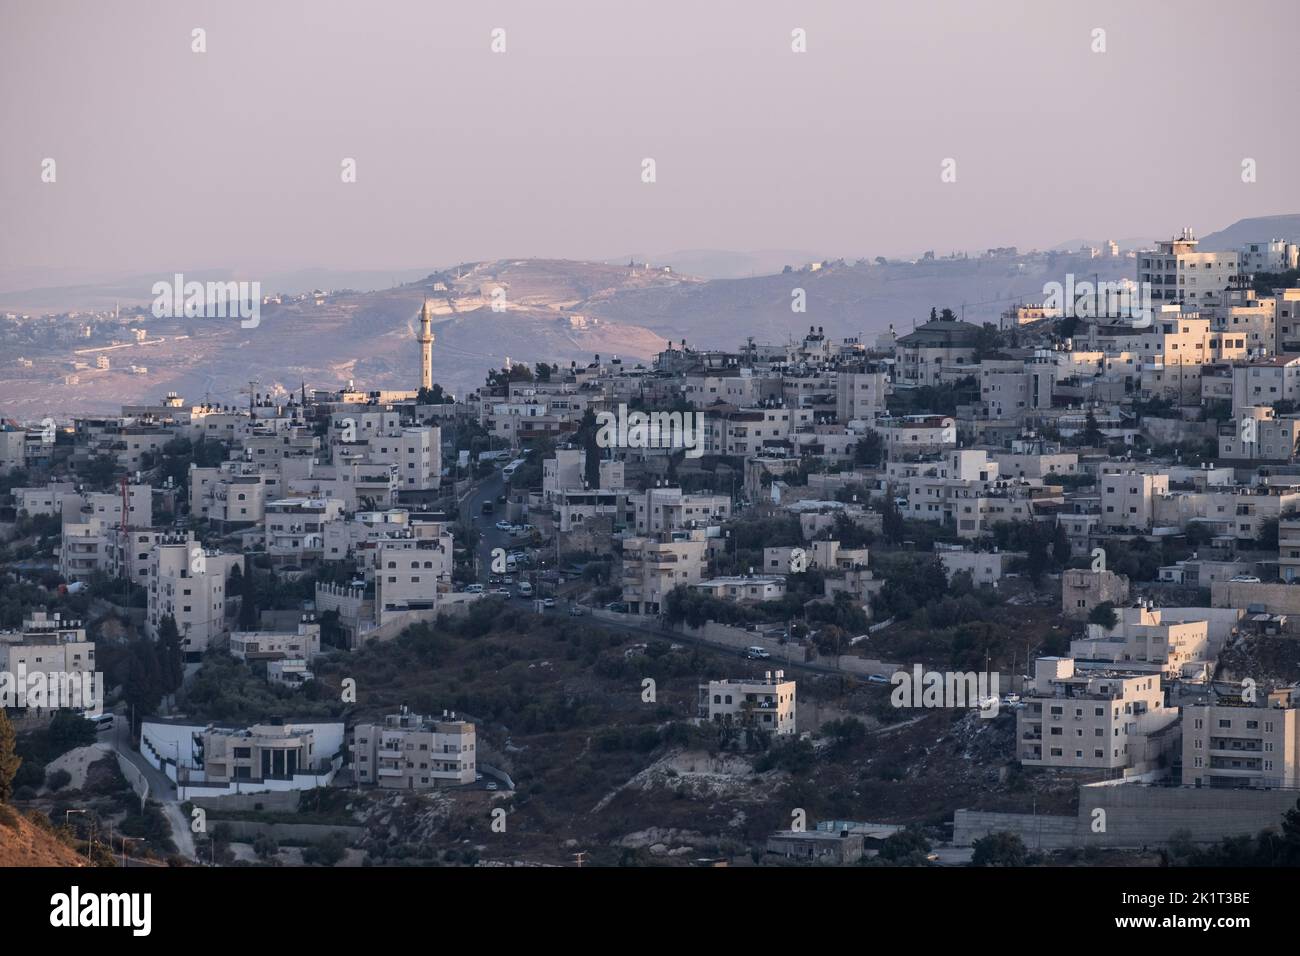 Vue sur sur Baher également Tsur Baher, un quartier palestinien situé à la périphérie sud-est de Jérusalem-est. Israël Banque D'Images